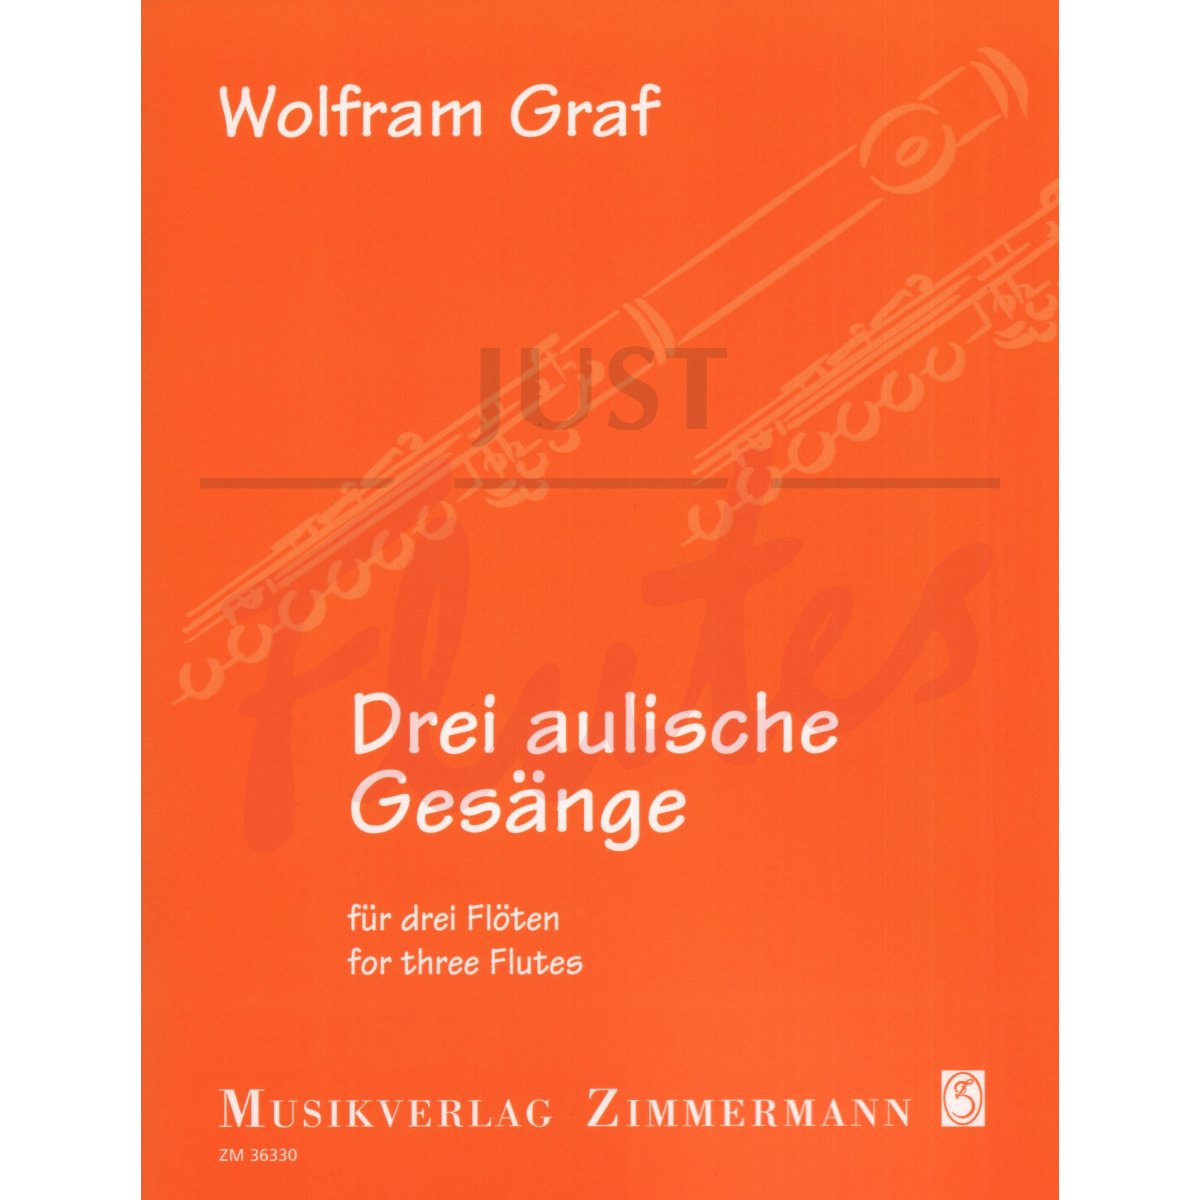 Drei aulische Gesänge for Three Flutes